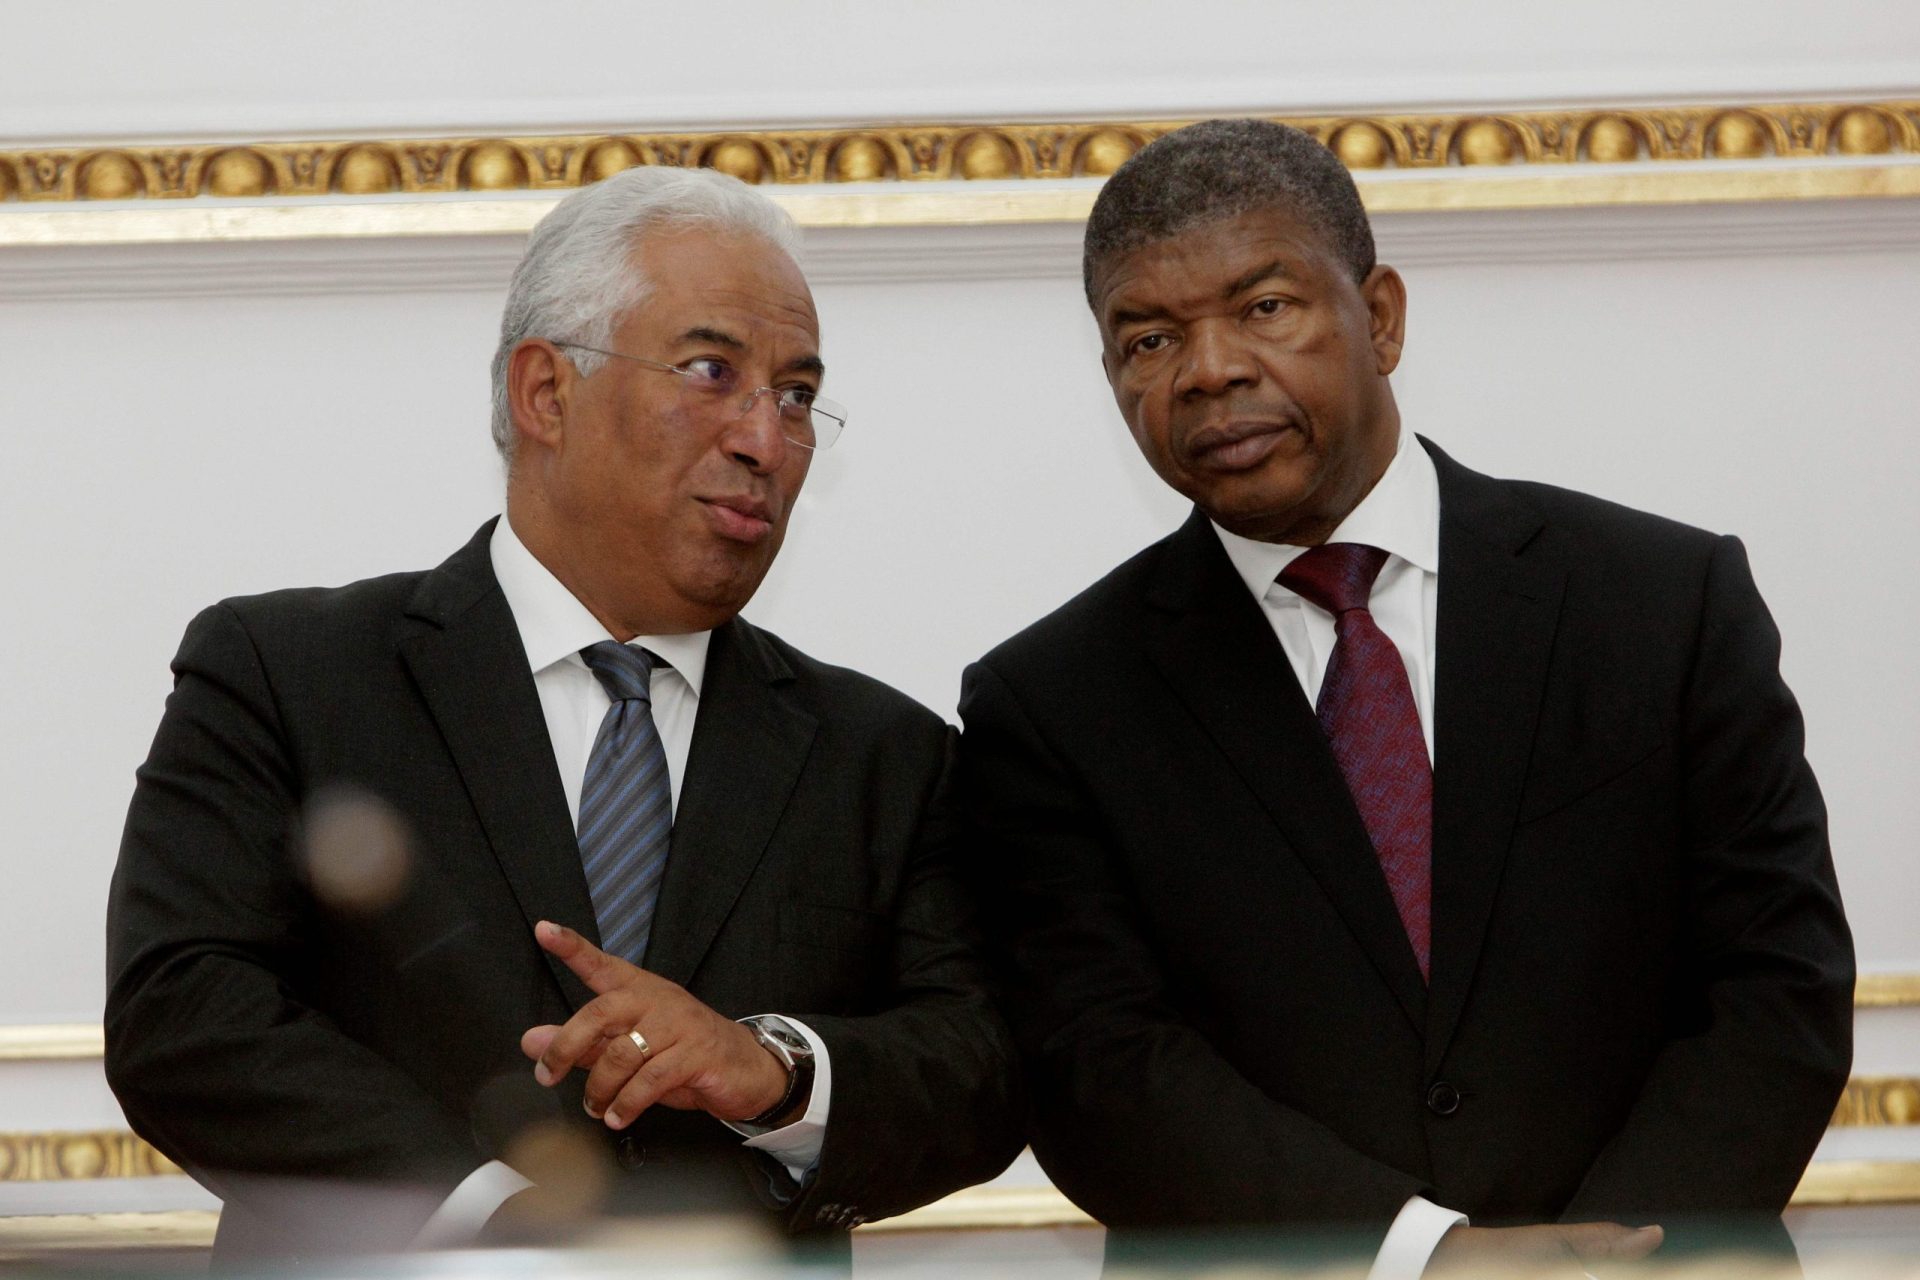 Costa garantiu apoio a Angola no combate à corrupção